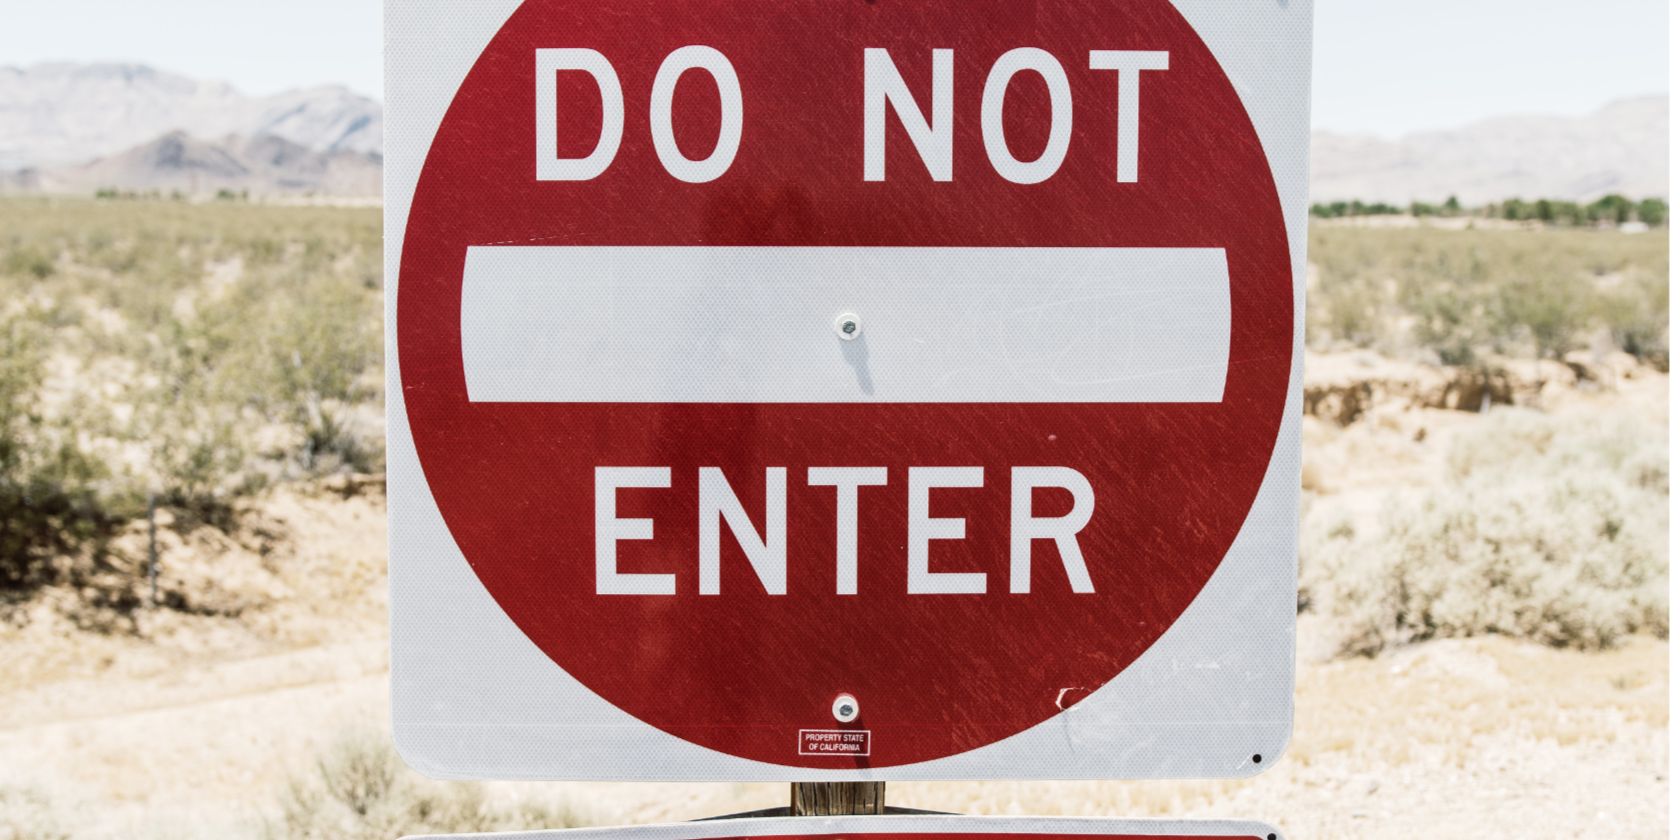 Do not enter sign in the desert